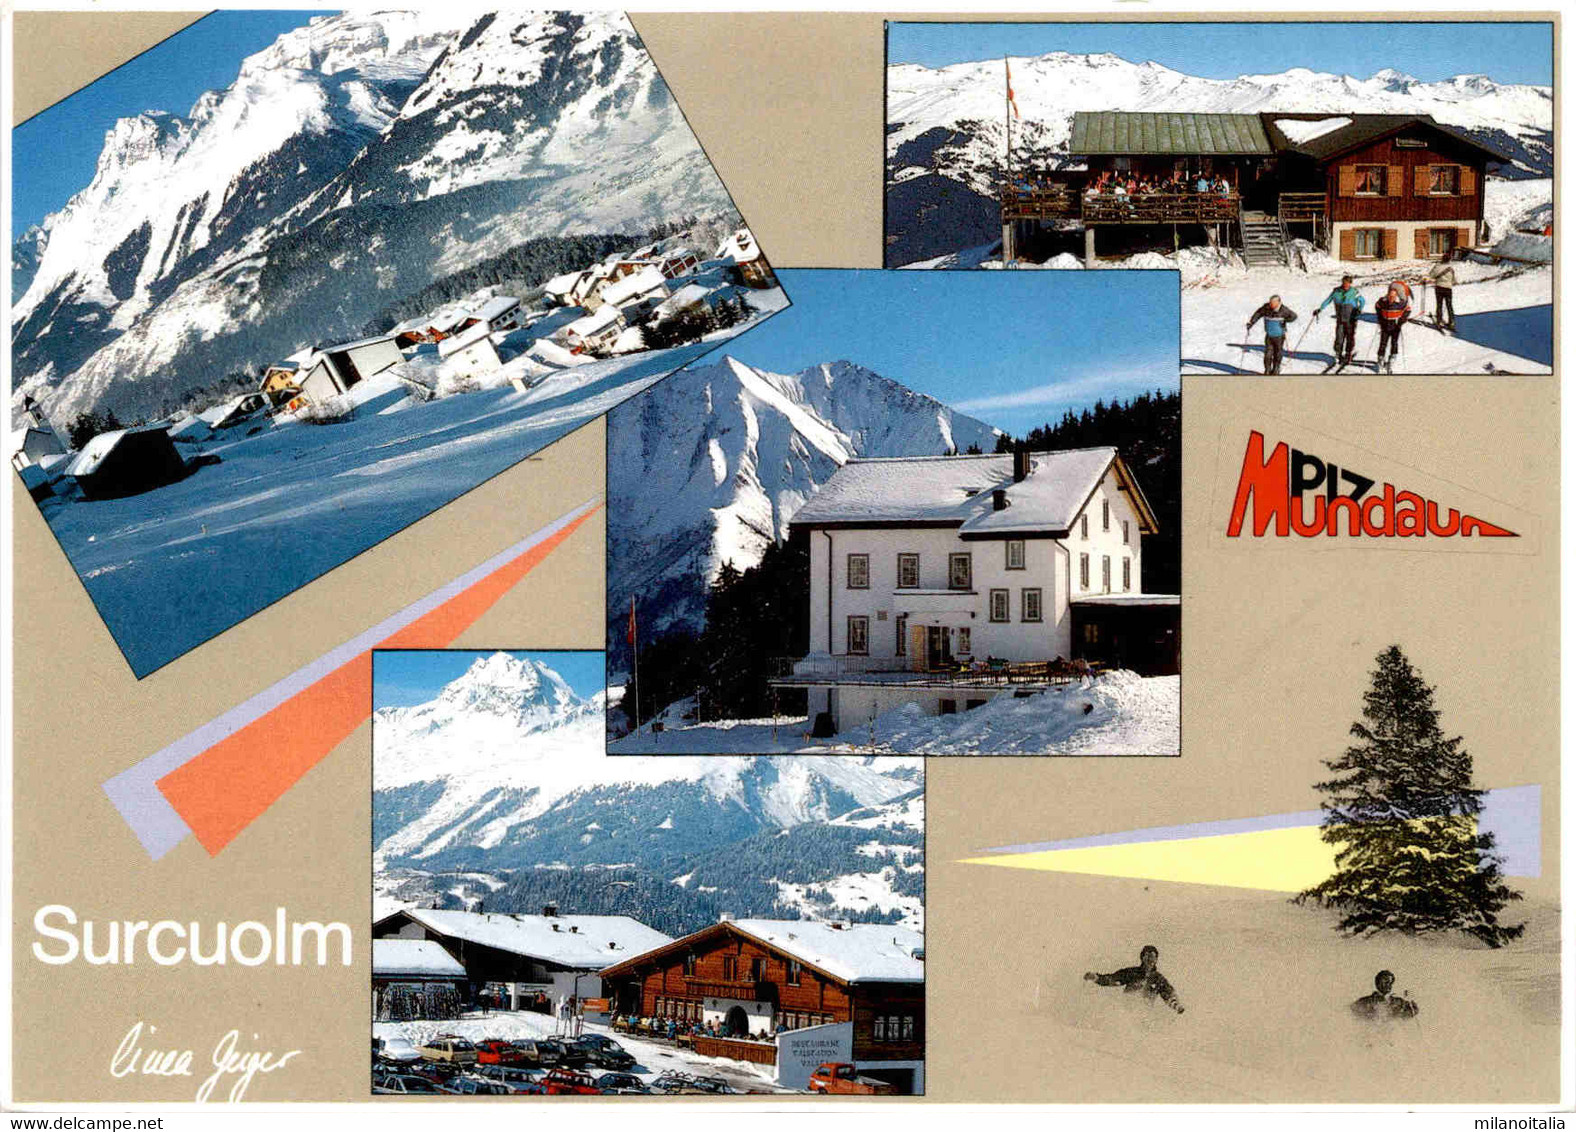 Skigebiet Piz Mundaun - Surcuolm - 4 Bilder (4/157) * 13. 3. 1995 - Mundaun